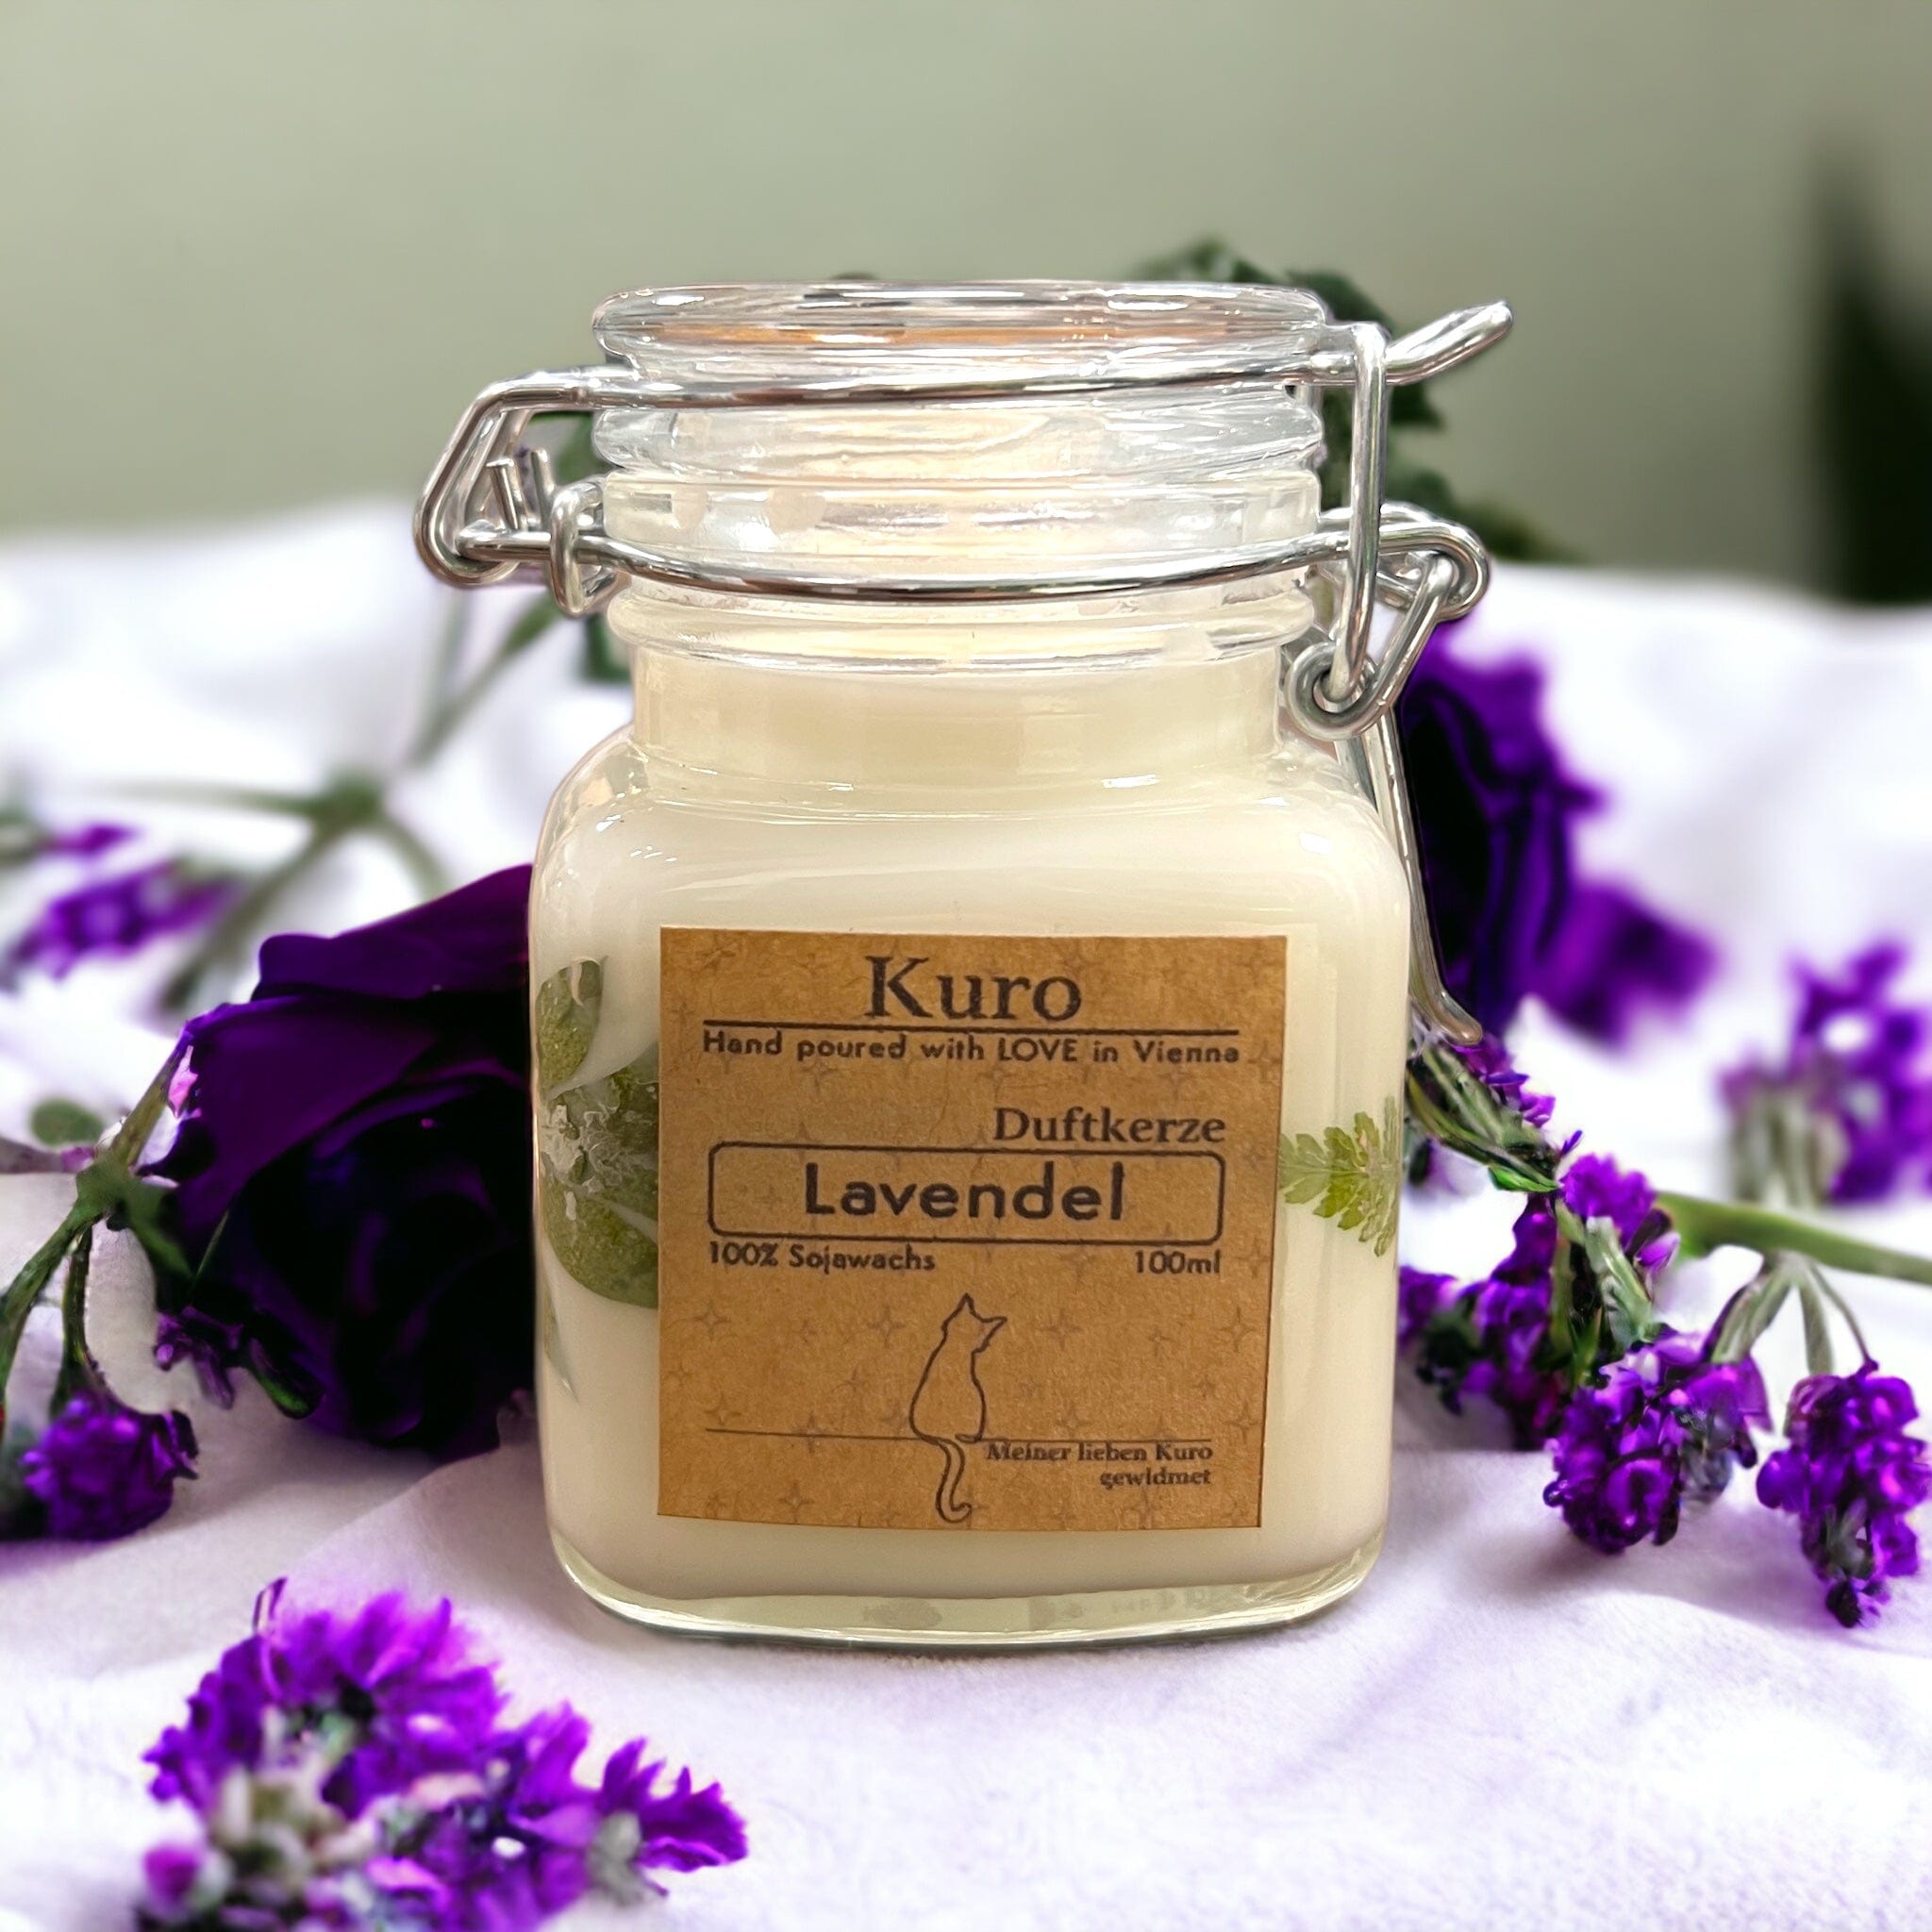 Handgemachte Duftkerzen aus Sojawachs im Abverkauf (-44%) Lavendel Home Decor Kuro oesterreich handgemachte geschenke in wien